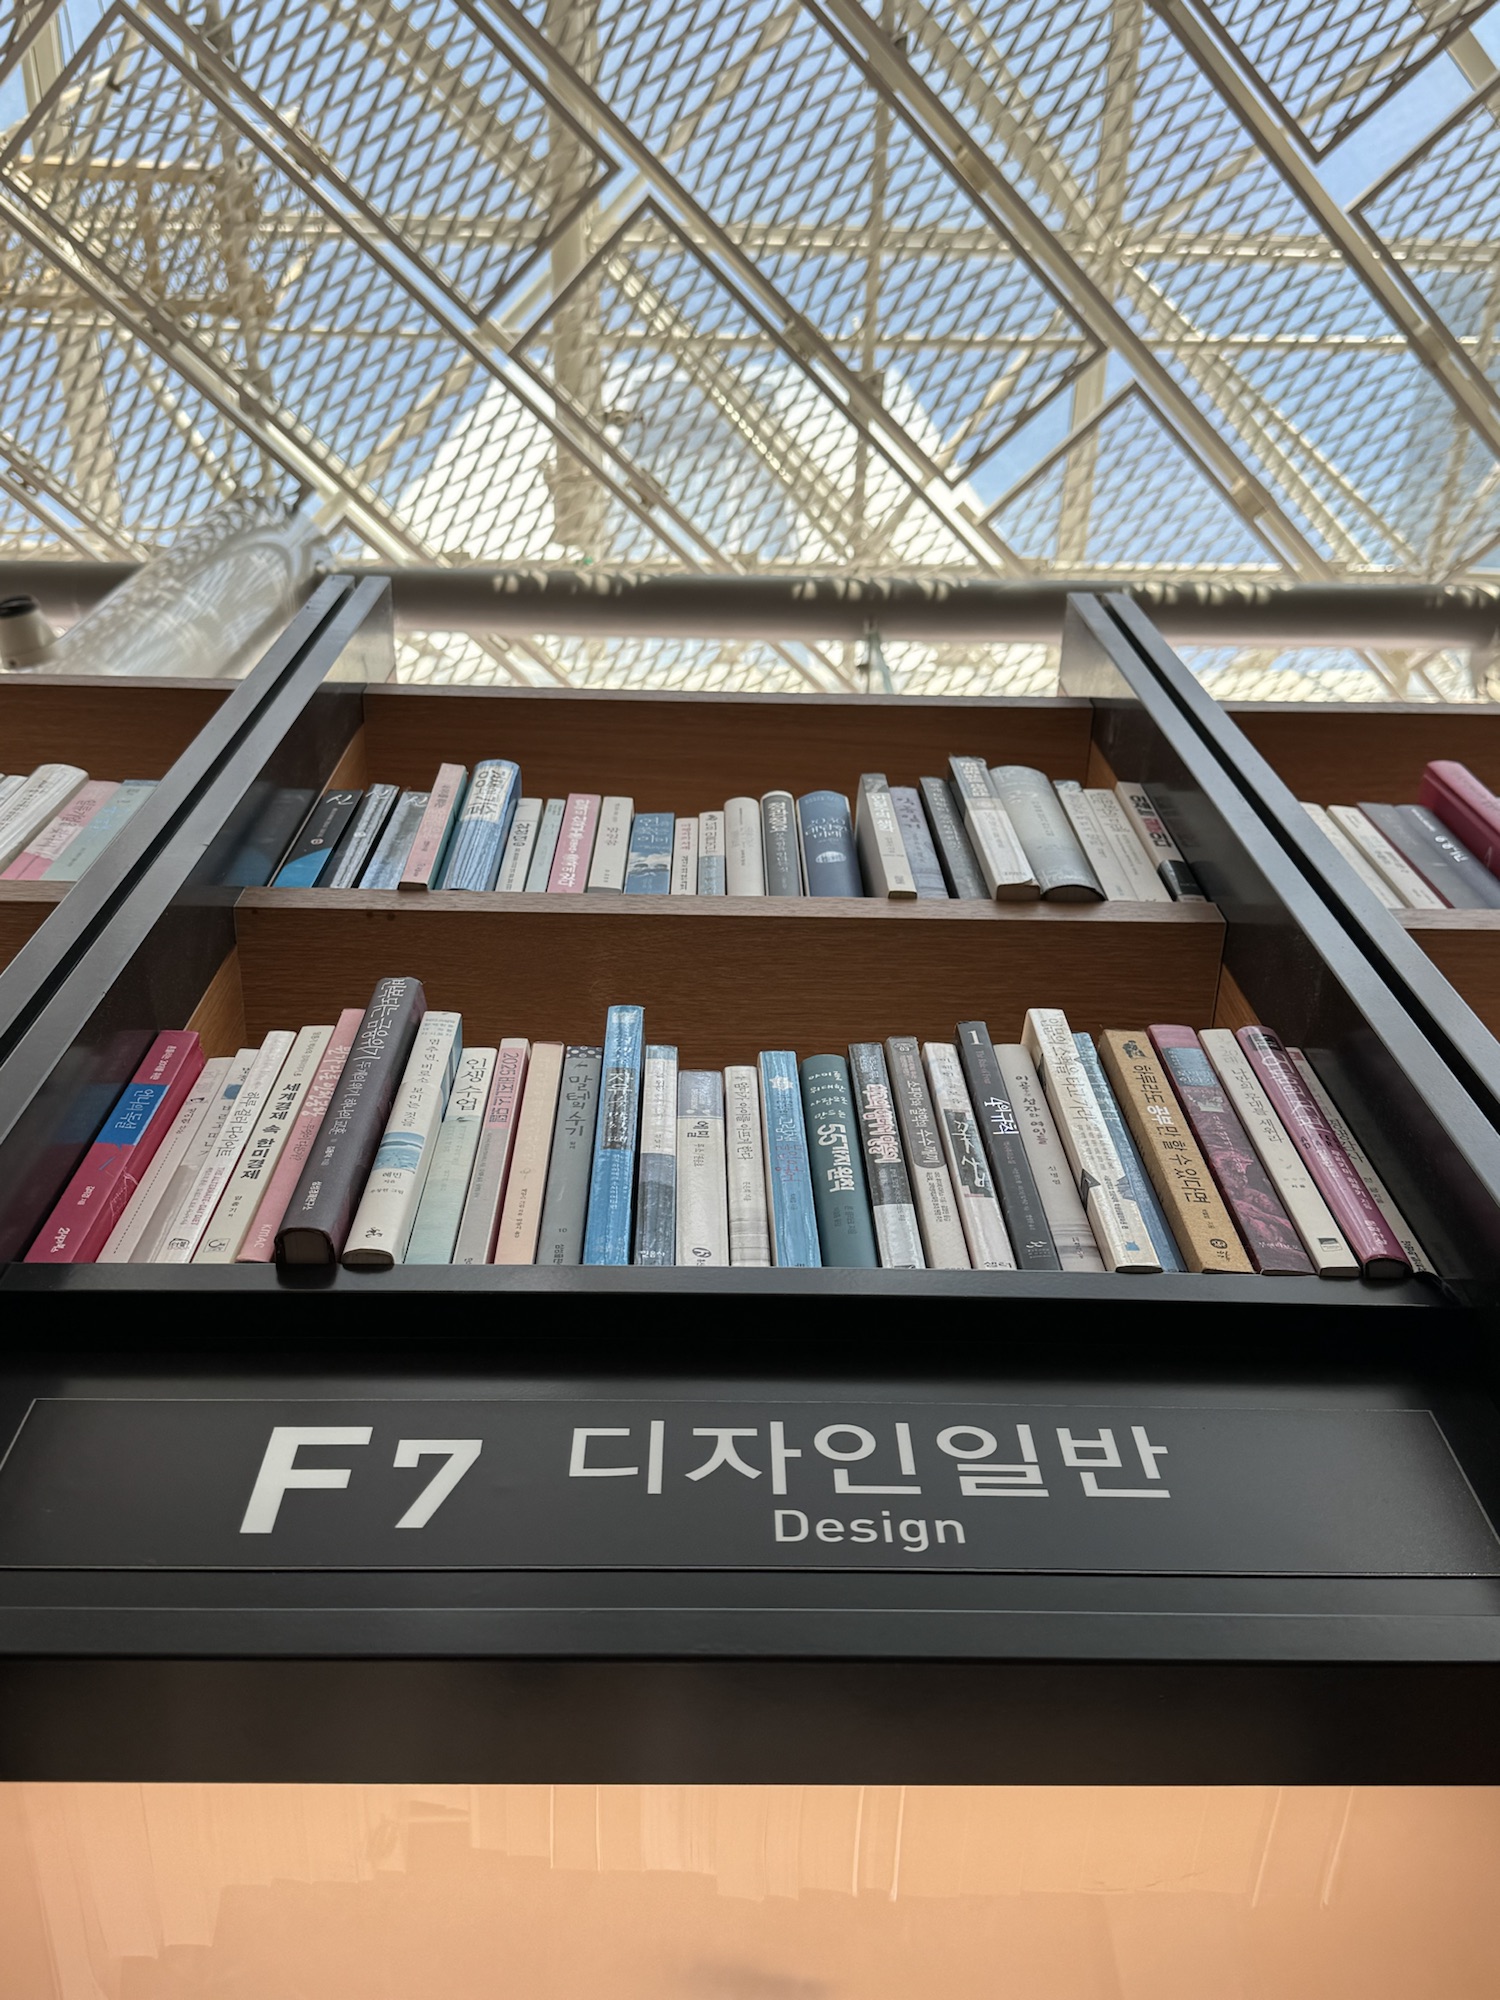 GenZ重新發現圖書館樂趣，找尋一個無可批判你的地方